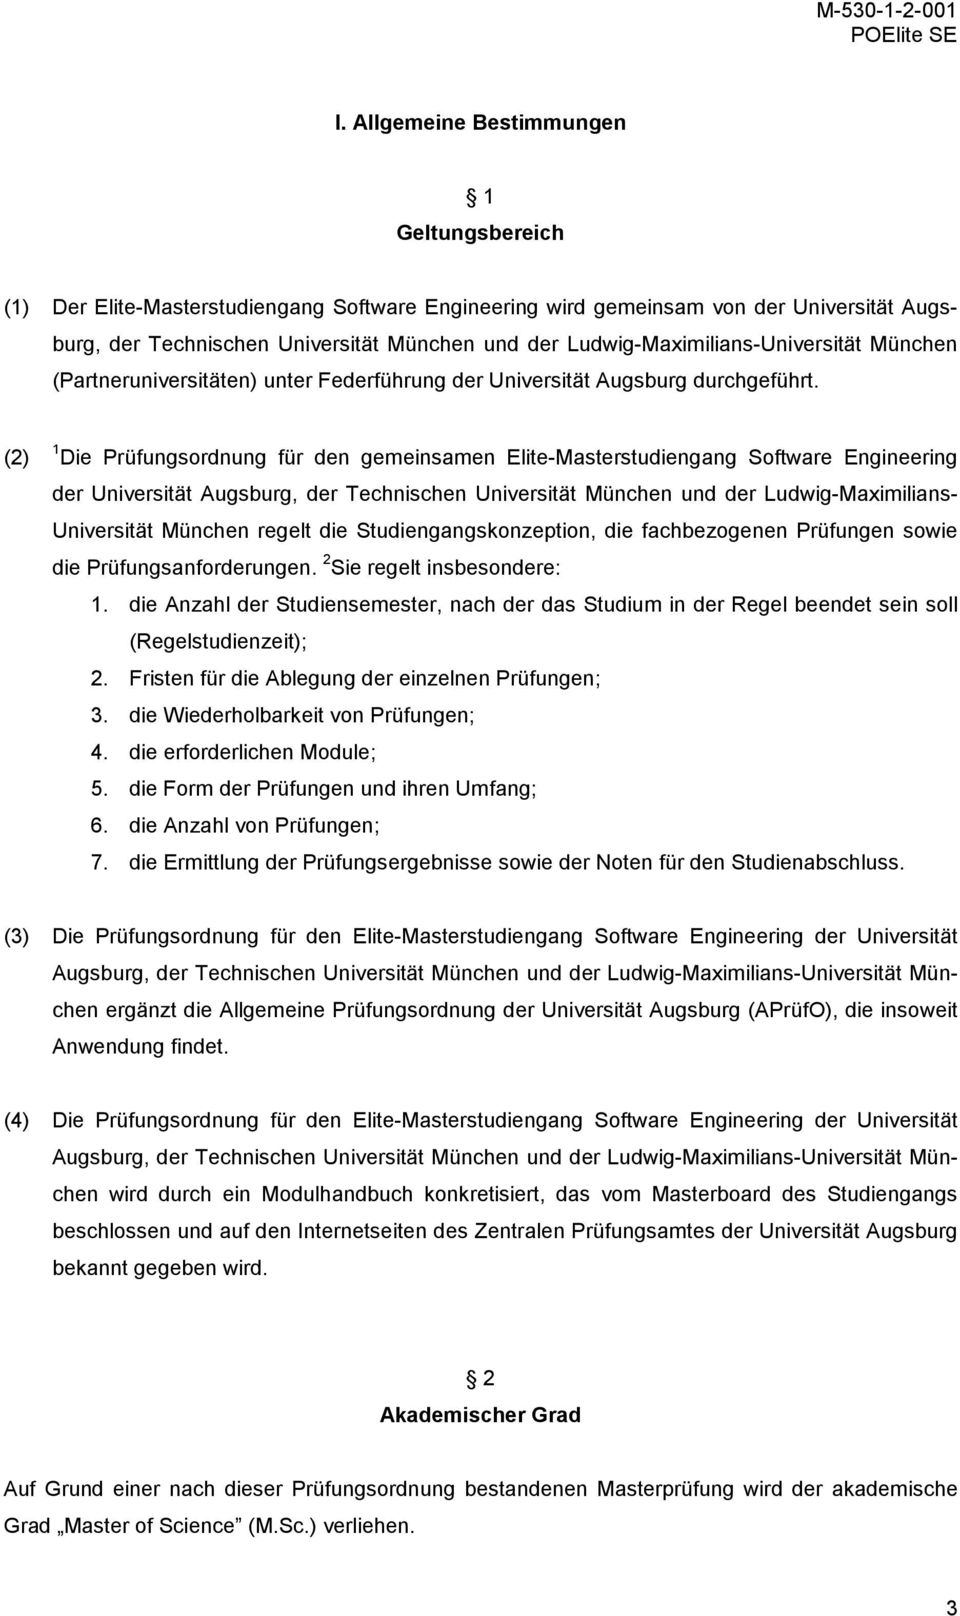 1 Die Prüfungsordnung für den gemeinsamen Elite-Masterstudiengang Software Engineering der Universität Augsburg, der Technischen Universität München und der Ludwig-Maximilians- Universität München